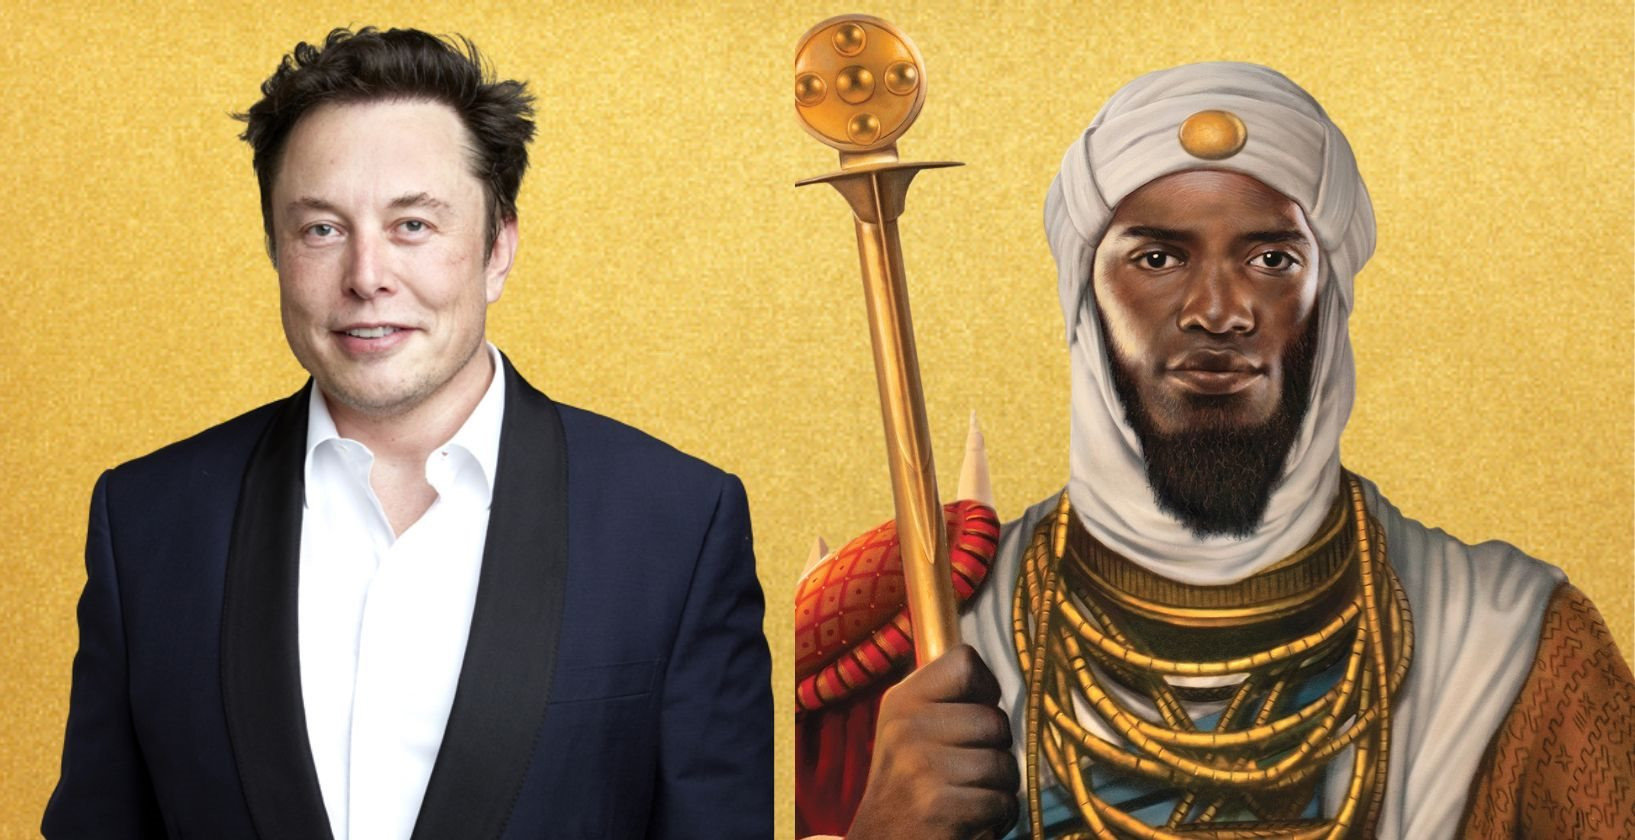 Chẳng phải Elon Musk hay người giàu nhất mọi thời đại Mansa Musa, đây mới là tỷ phú USD đầu tiên trên thế giới - Ảnh 1.